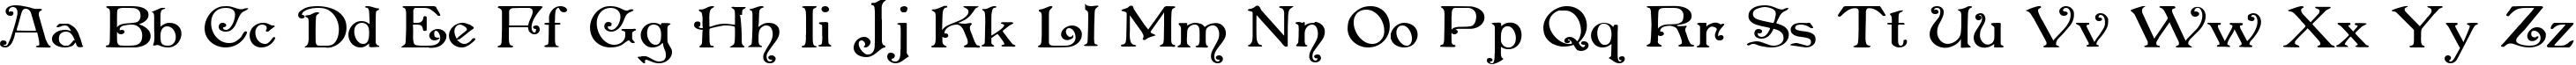 Пример написания английского алфавита шрифтом Penshurst Bold